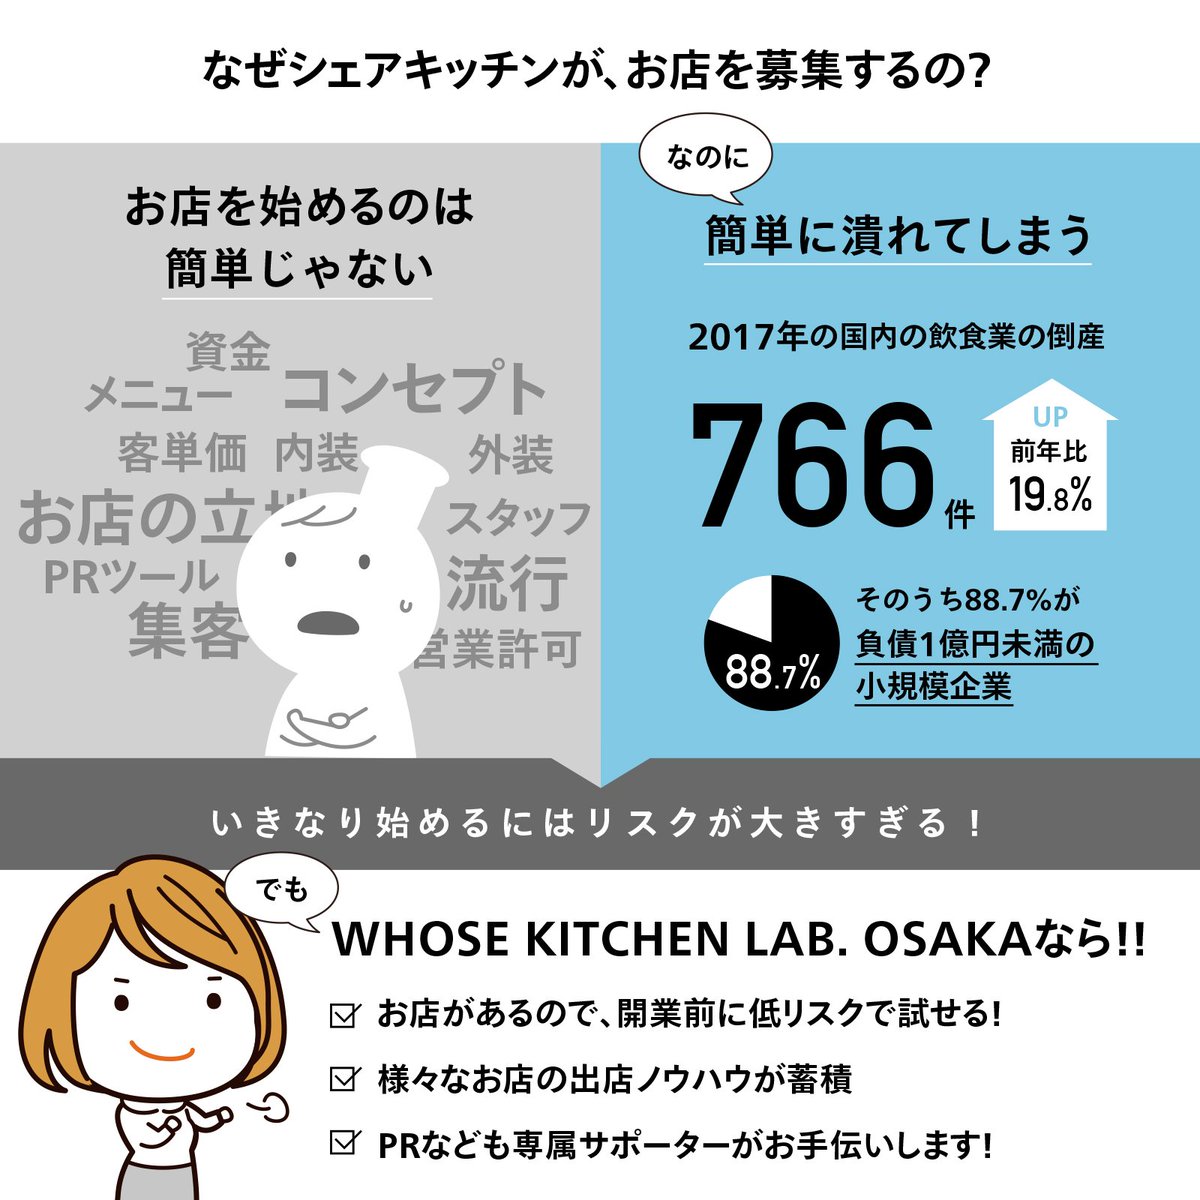 じぶんのお店を持ちたいシェフ、パティシエさんいませんか。シェアキッチンの「WHOSE KITCHEN LAB. OSAKA」さんが「1ヶ月10万円で大阪の福島にお店を出せる」シェフオーディションを開催中です。5/6締切です。

・… 